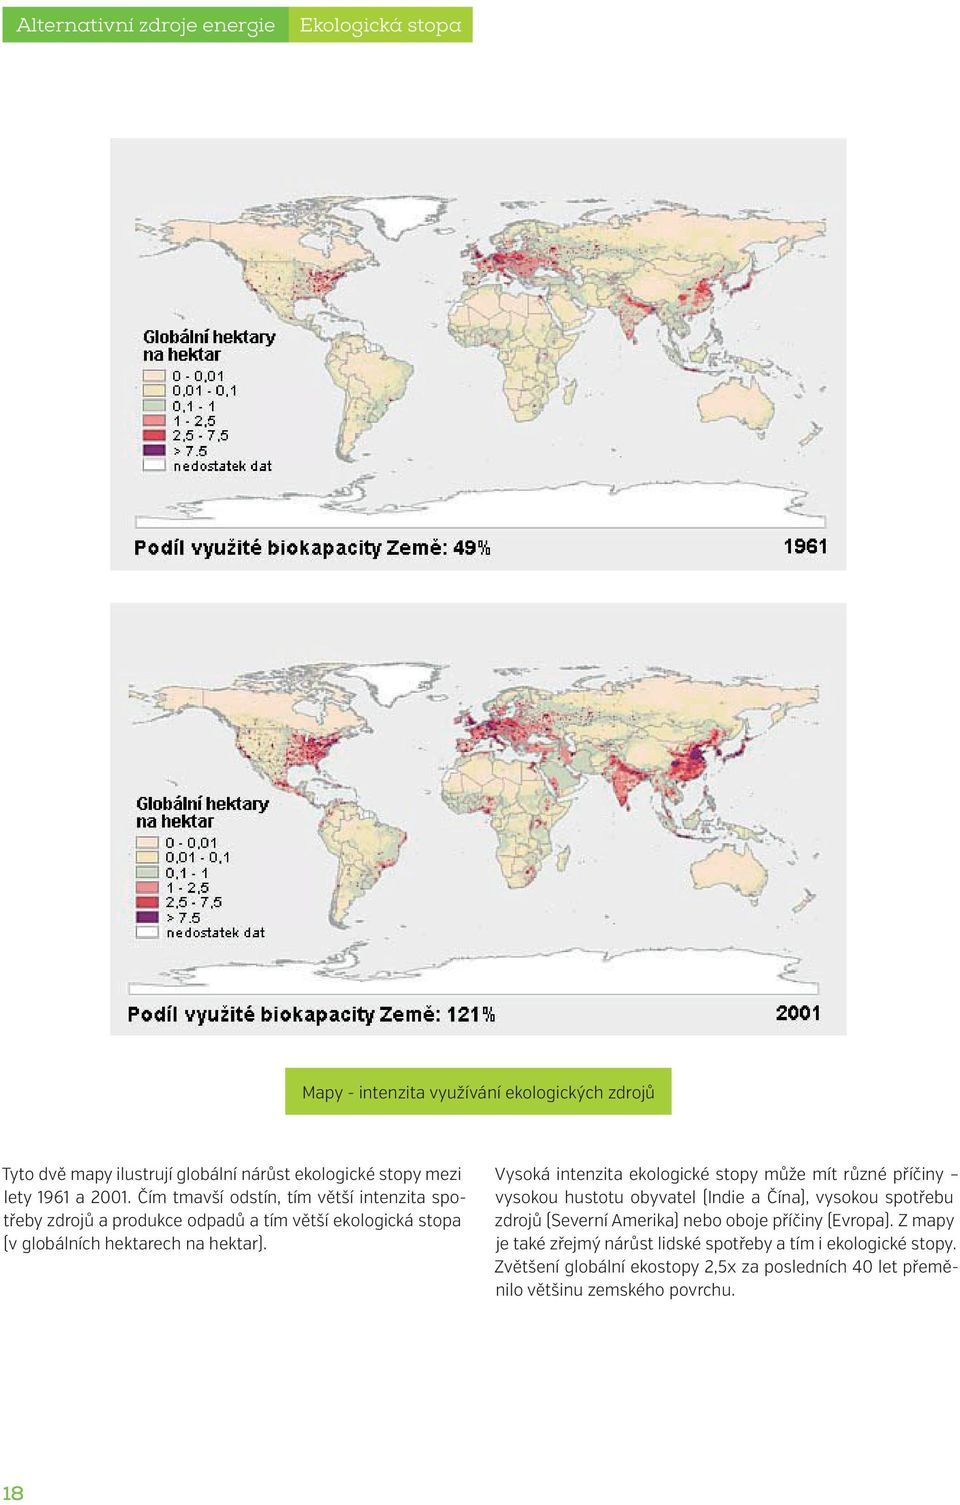 Čím tmavší odstín, tím větší Tyto intenzita dvě mapy spotřeby ilustrují zdrojů globální a produkce nárůst ekologické odpadů a stopy tím větší mezi ekologická lety 1961 a stopa 2001.